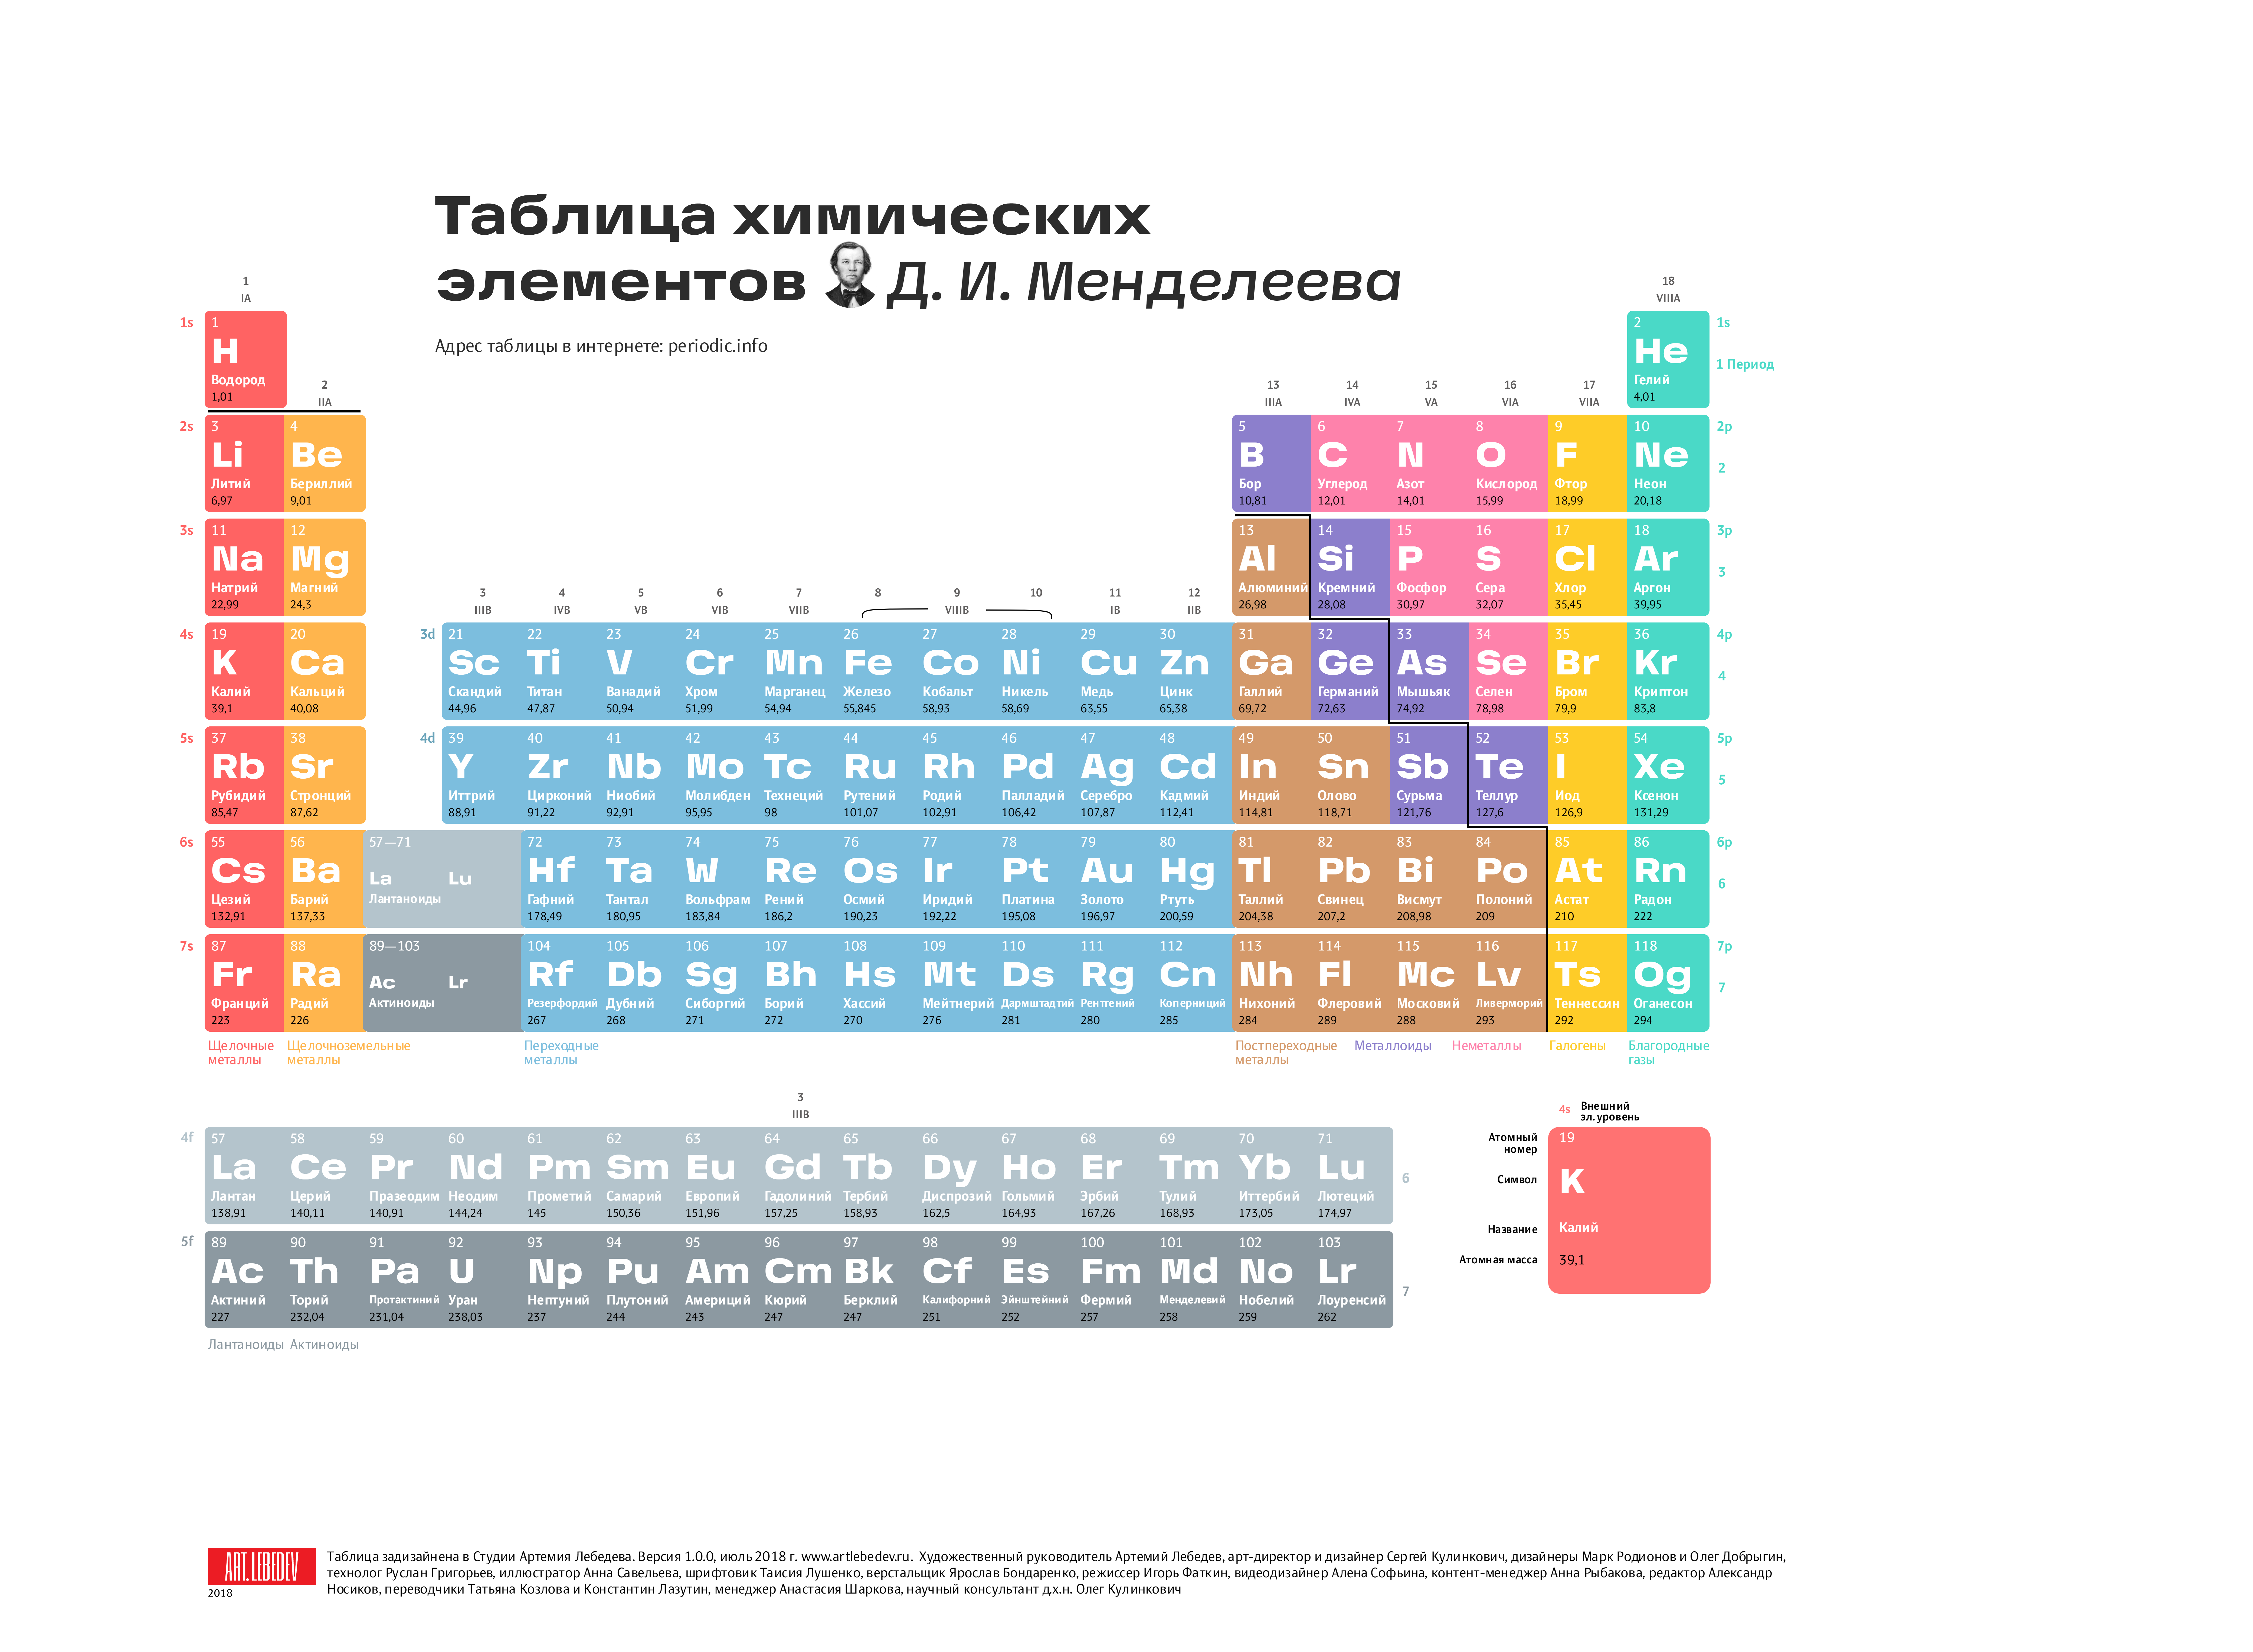 40 18 элемент. Современная таблица Менделеева 118 элементов. Первые 20 элементов таблицы Менделеева. Химия просто таблица Менделеева 2.0. Первые 18 элементов таблицы Менделеева.